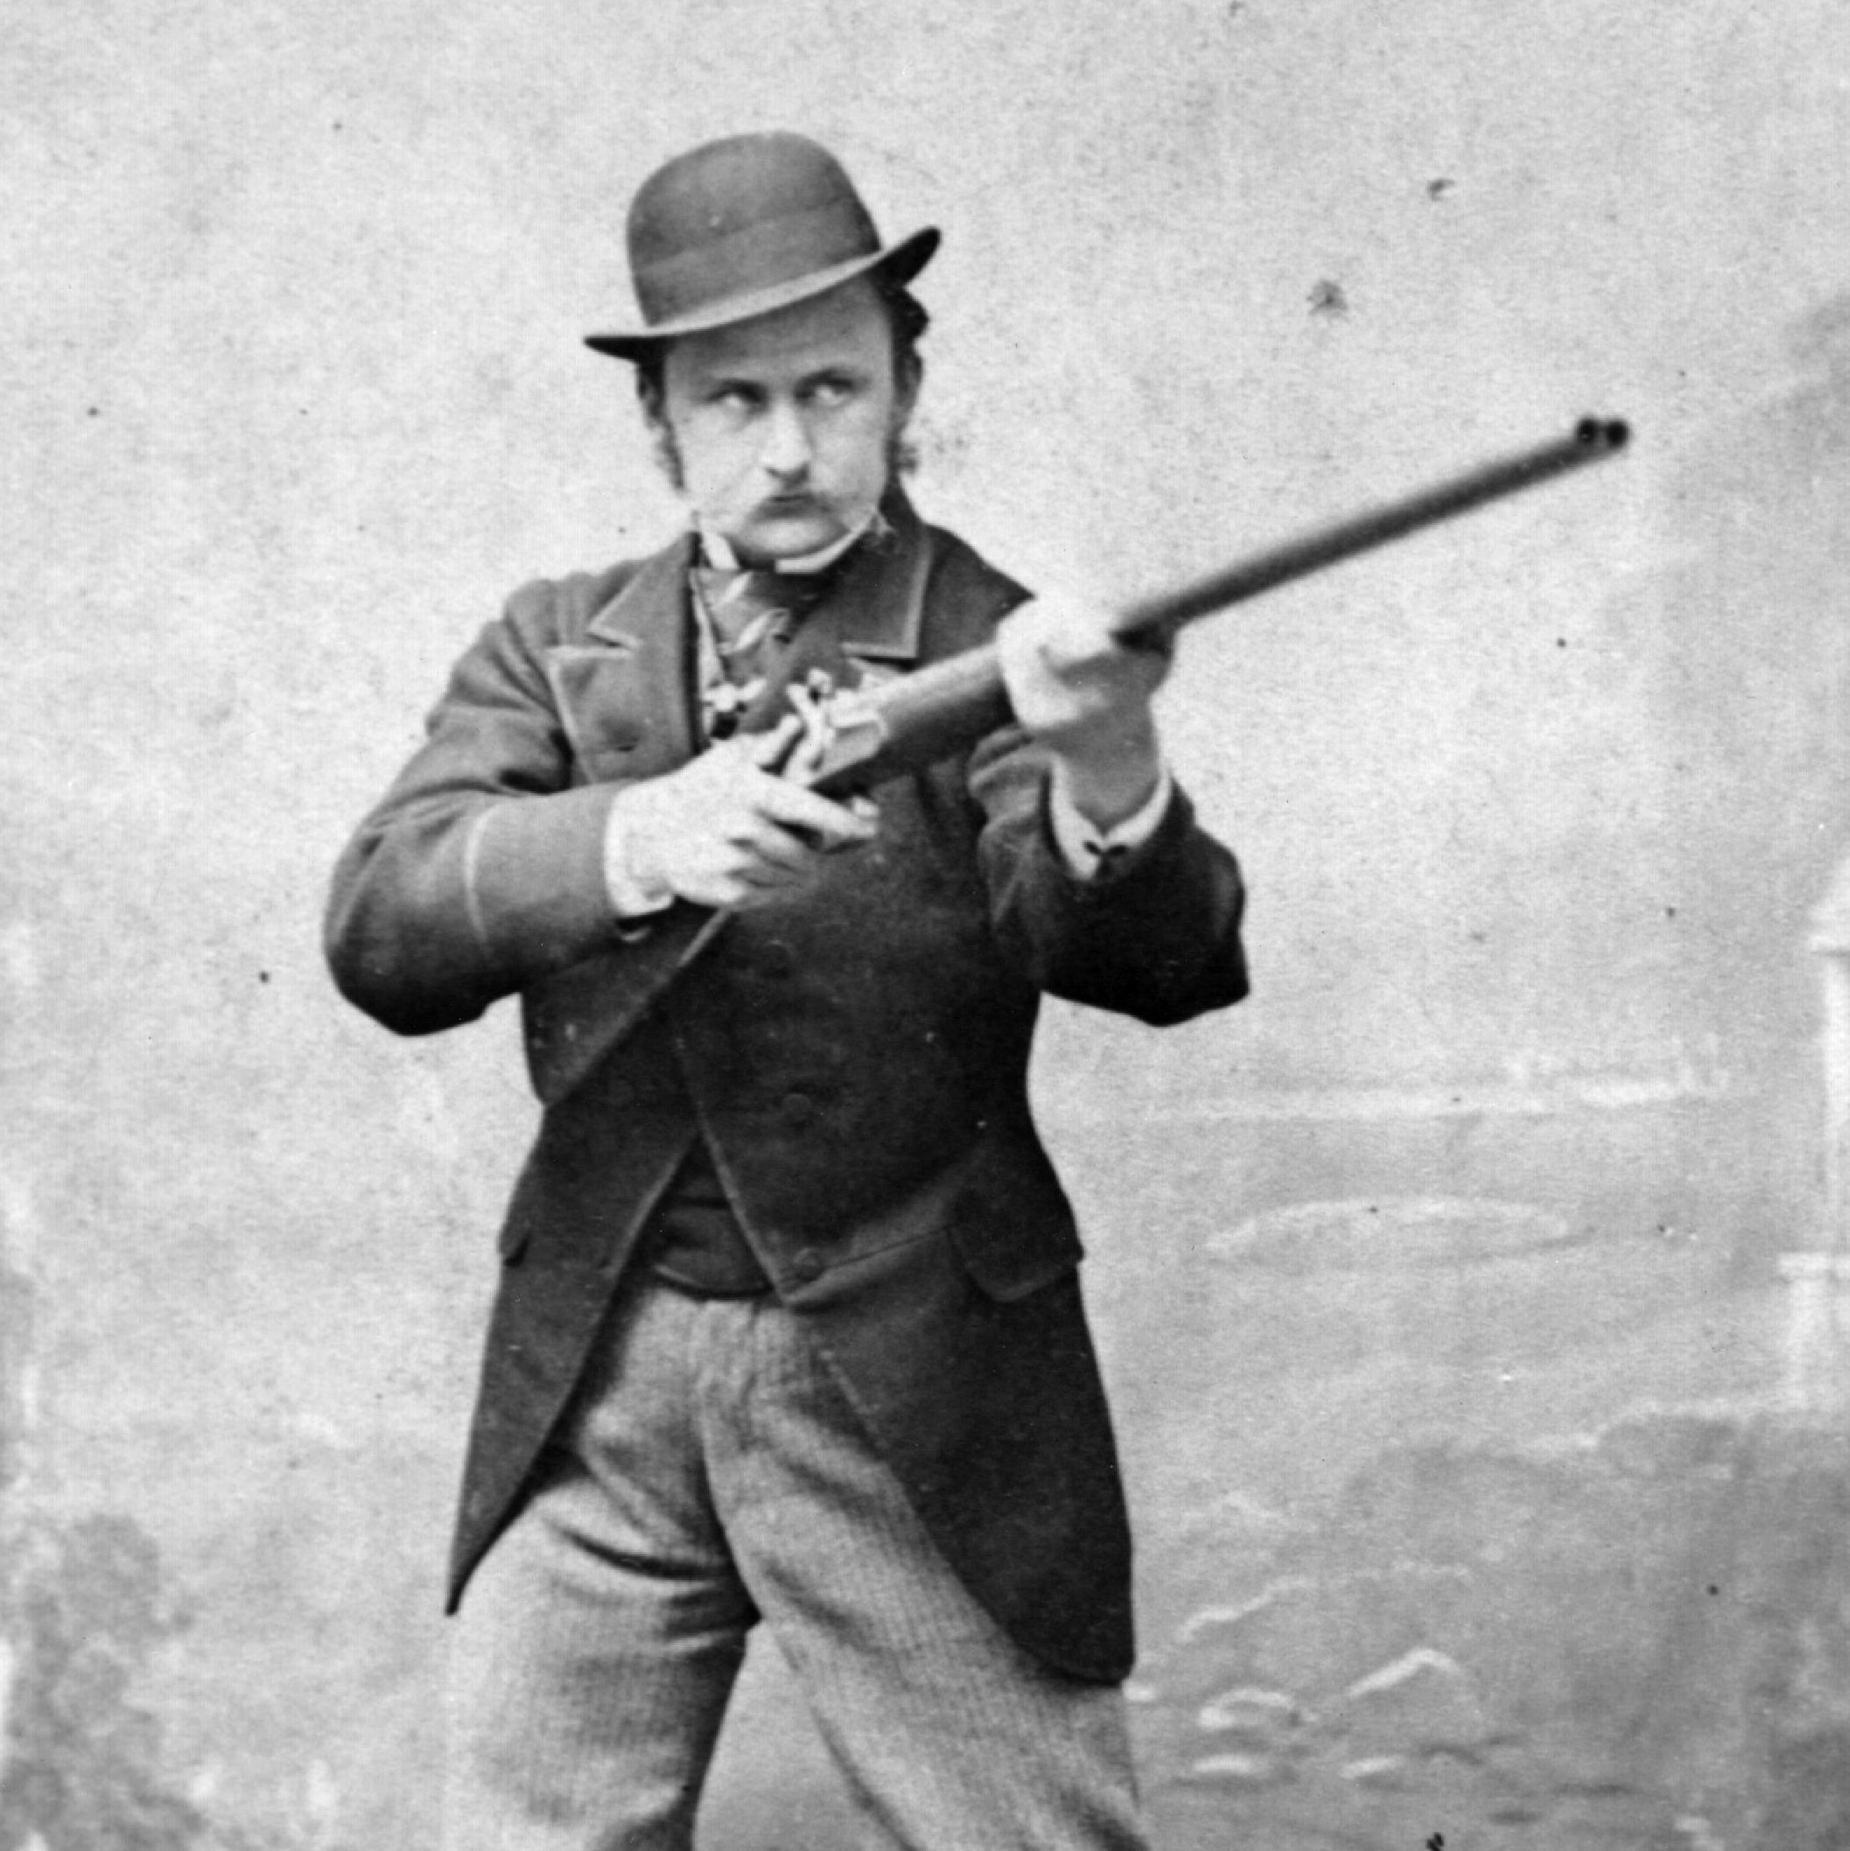 El "capitan" Charles Boycott con un arma en 1863